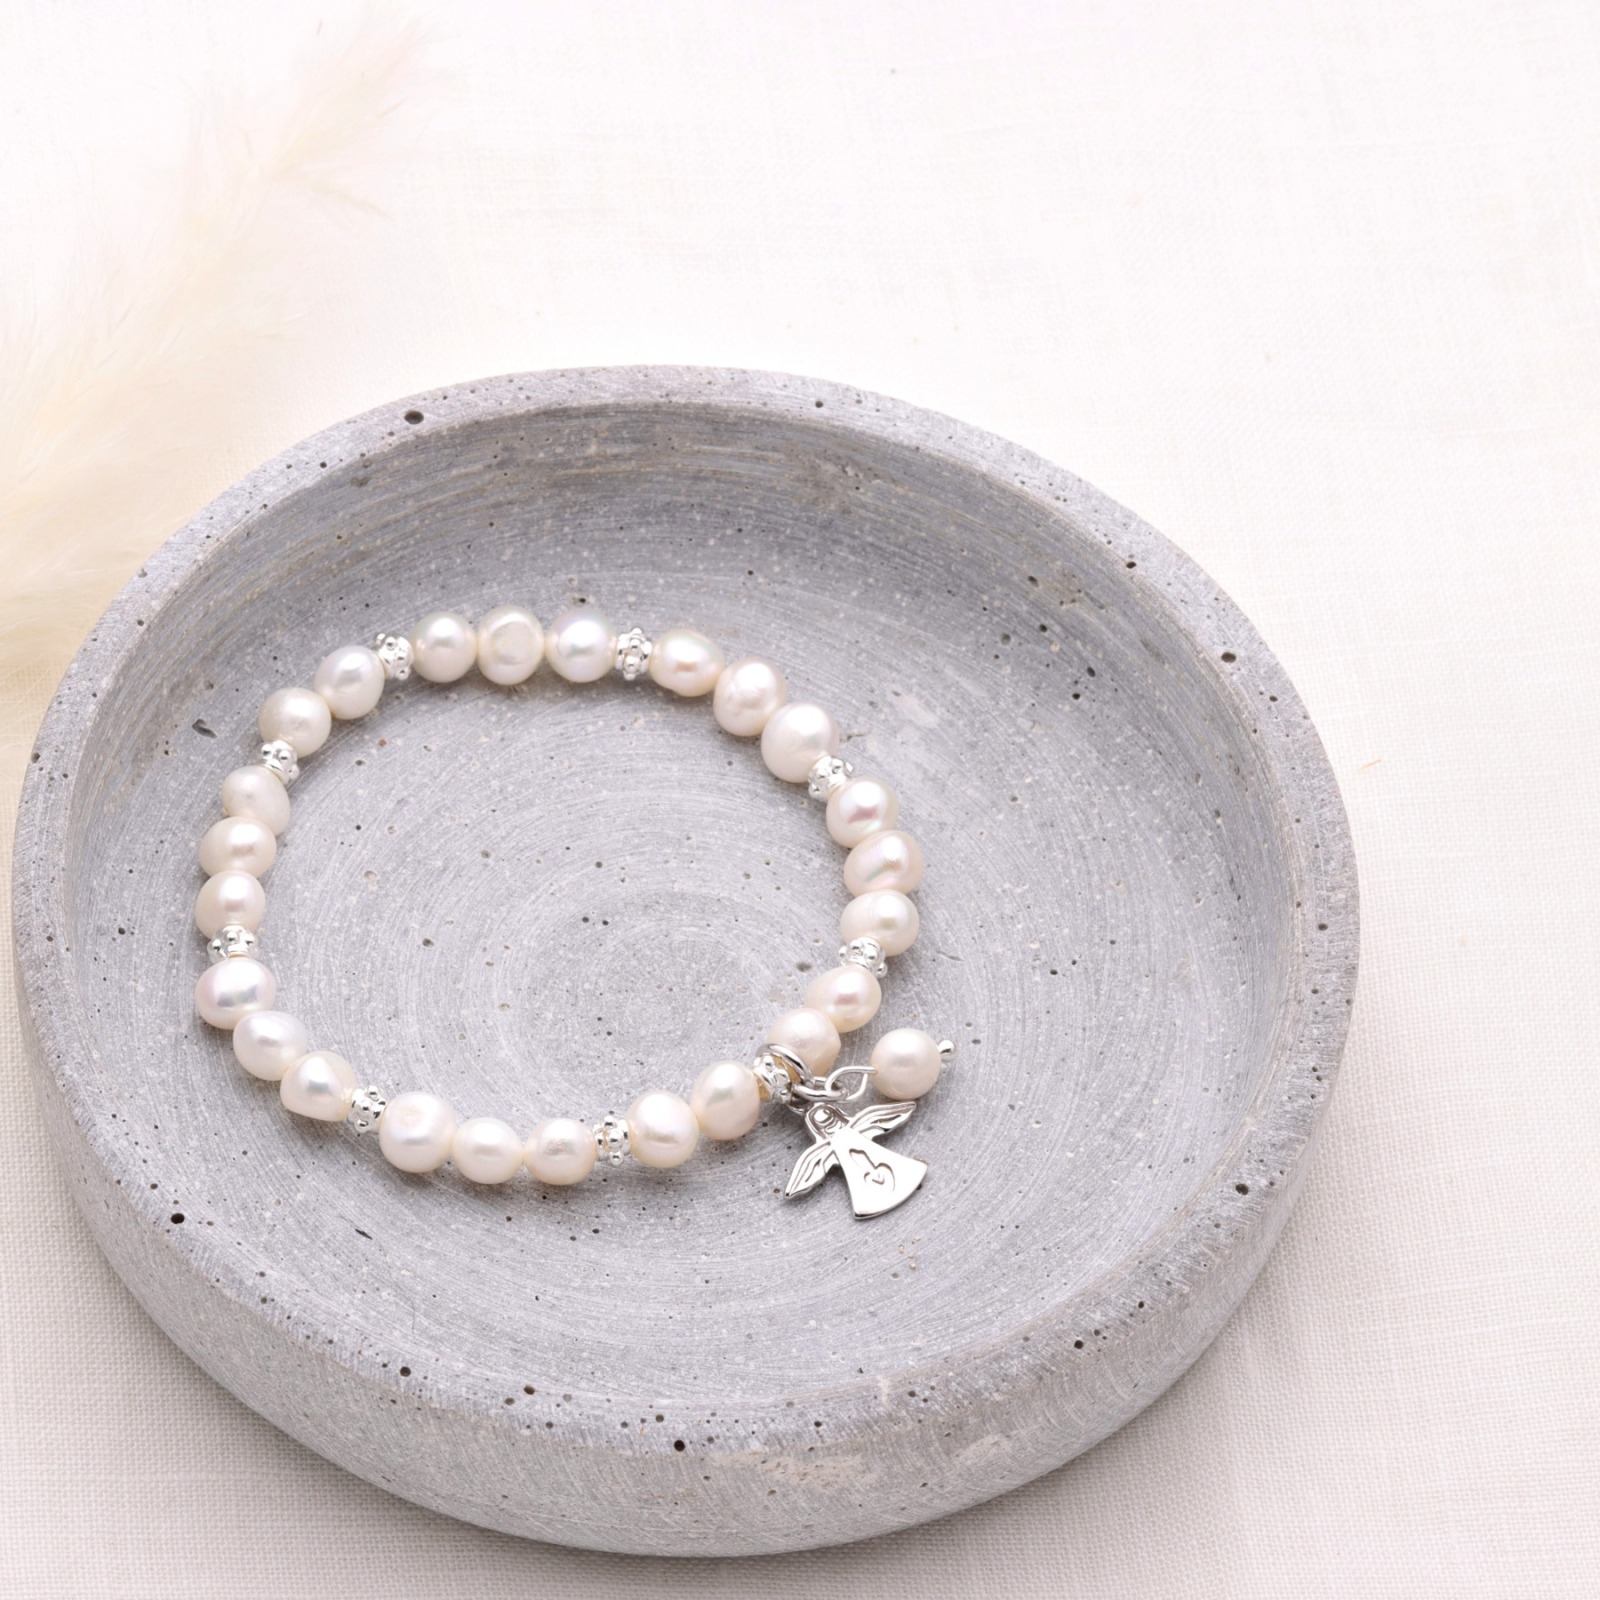 Armband aus echten Perlen mit Schutzengel Silber Geschenk zur Kommunion elastisch 3